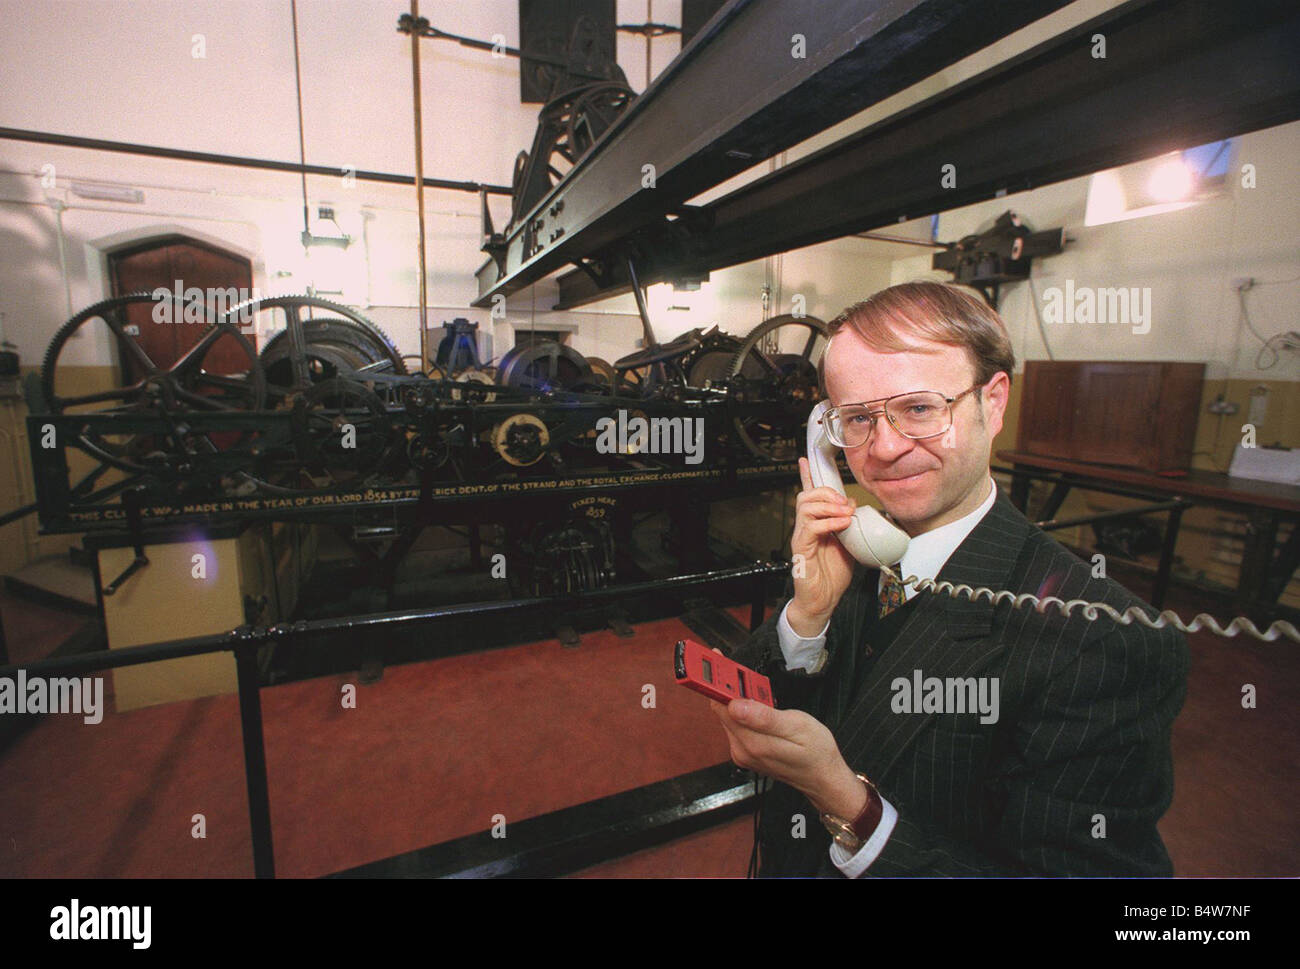 Mike McCann gardien du Grand Réveil Décembre 1999 vérifie la fois par téléphone en utilisant l'horloge parlante et en utilisant un chronomètre le mécanisme d'horloge est derrière lui avec la dépouille que tourner les mains au-dessus Banque D'Images